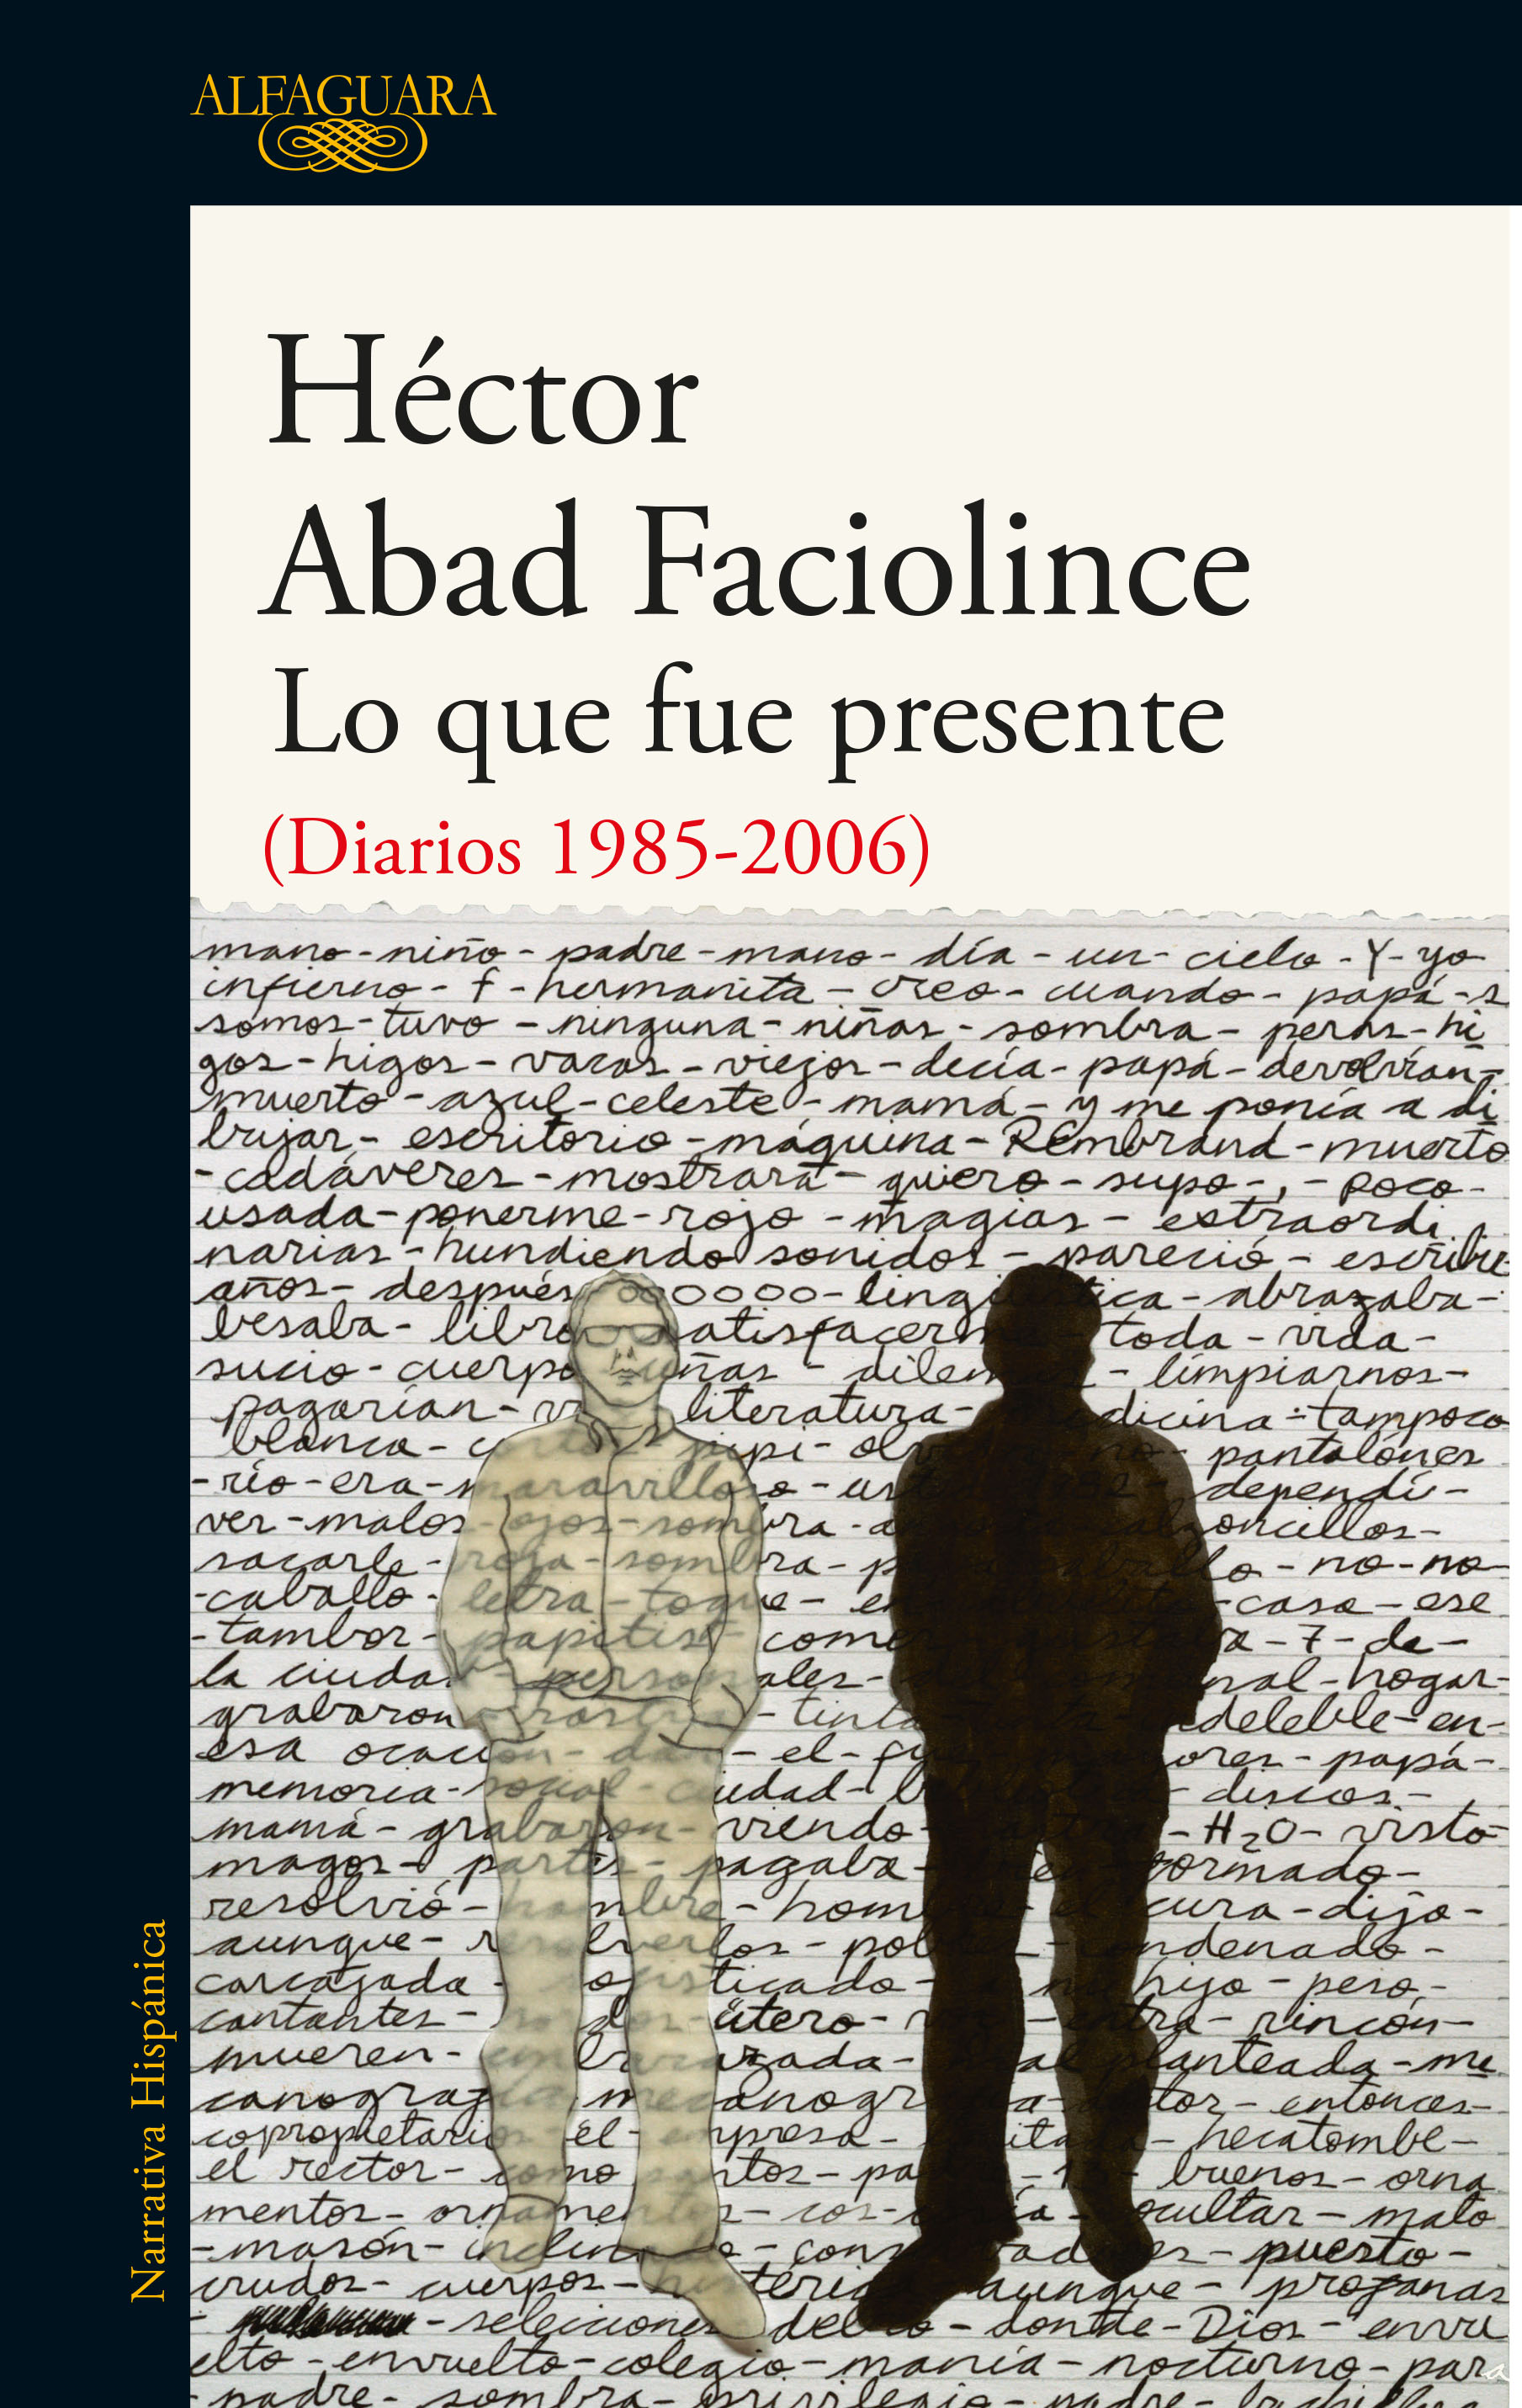 Hector Abad Faciolince: "En la escritura de un diario hay más oscuridad que luz, más insatisfacción y fracaso"